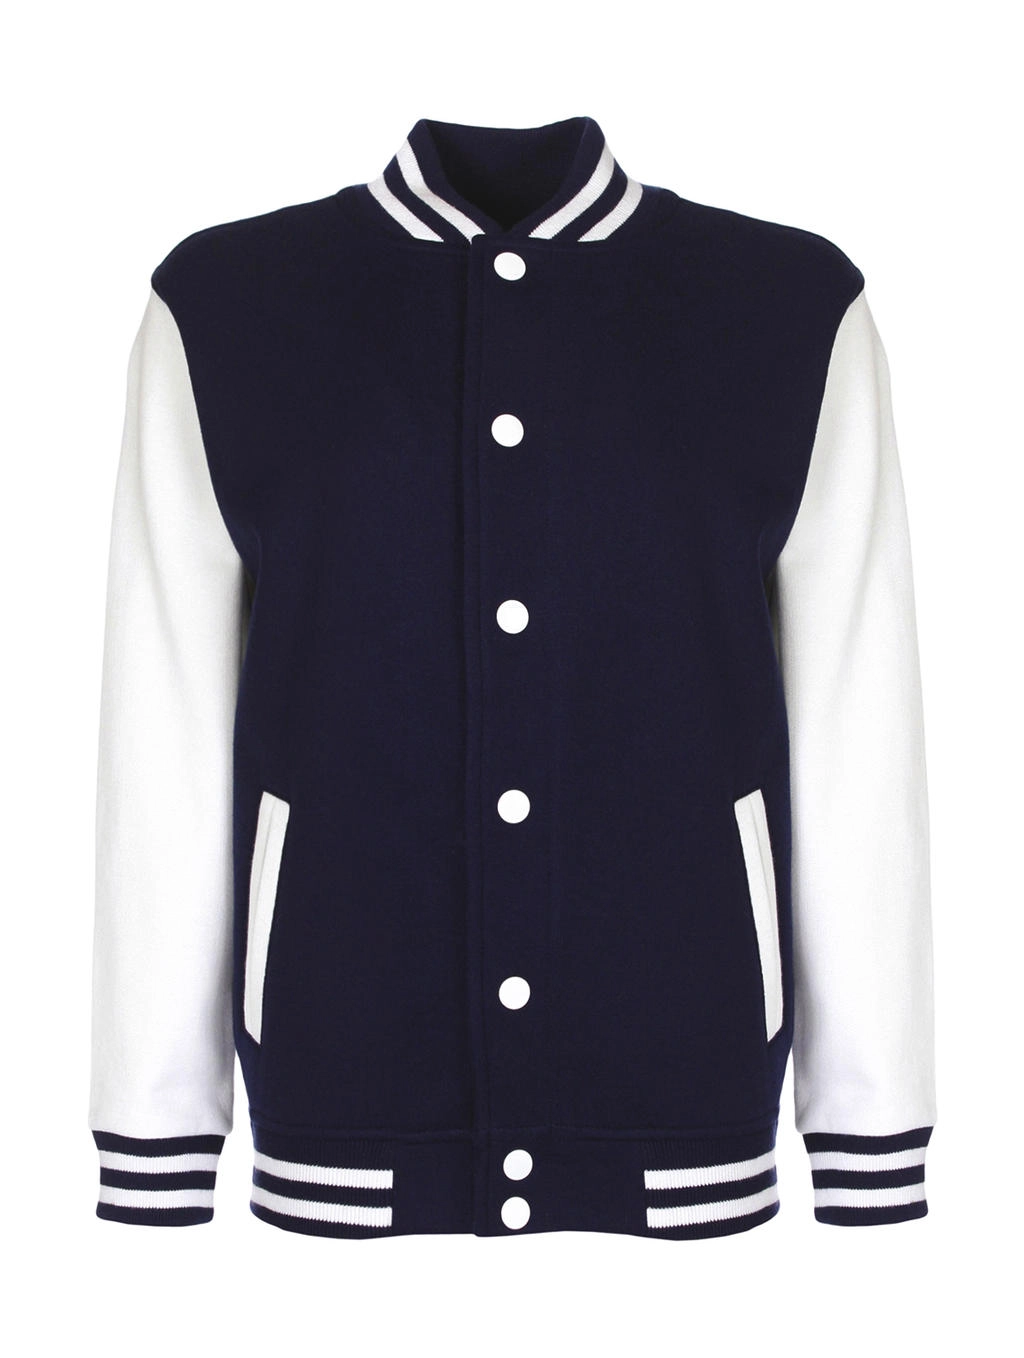 Junior Varsity Jacket zum Besticken und Bedrucken in der Farbe Navy/White mit Ihren Logo, Schriftzug oder Motiv.